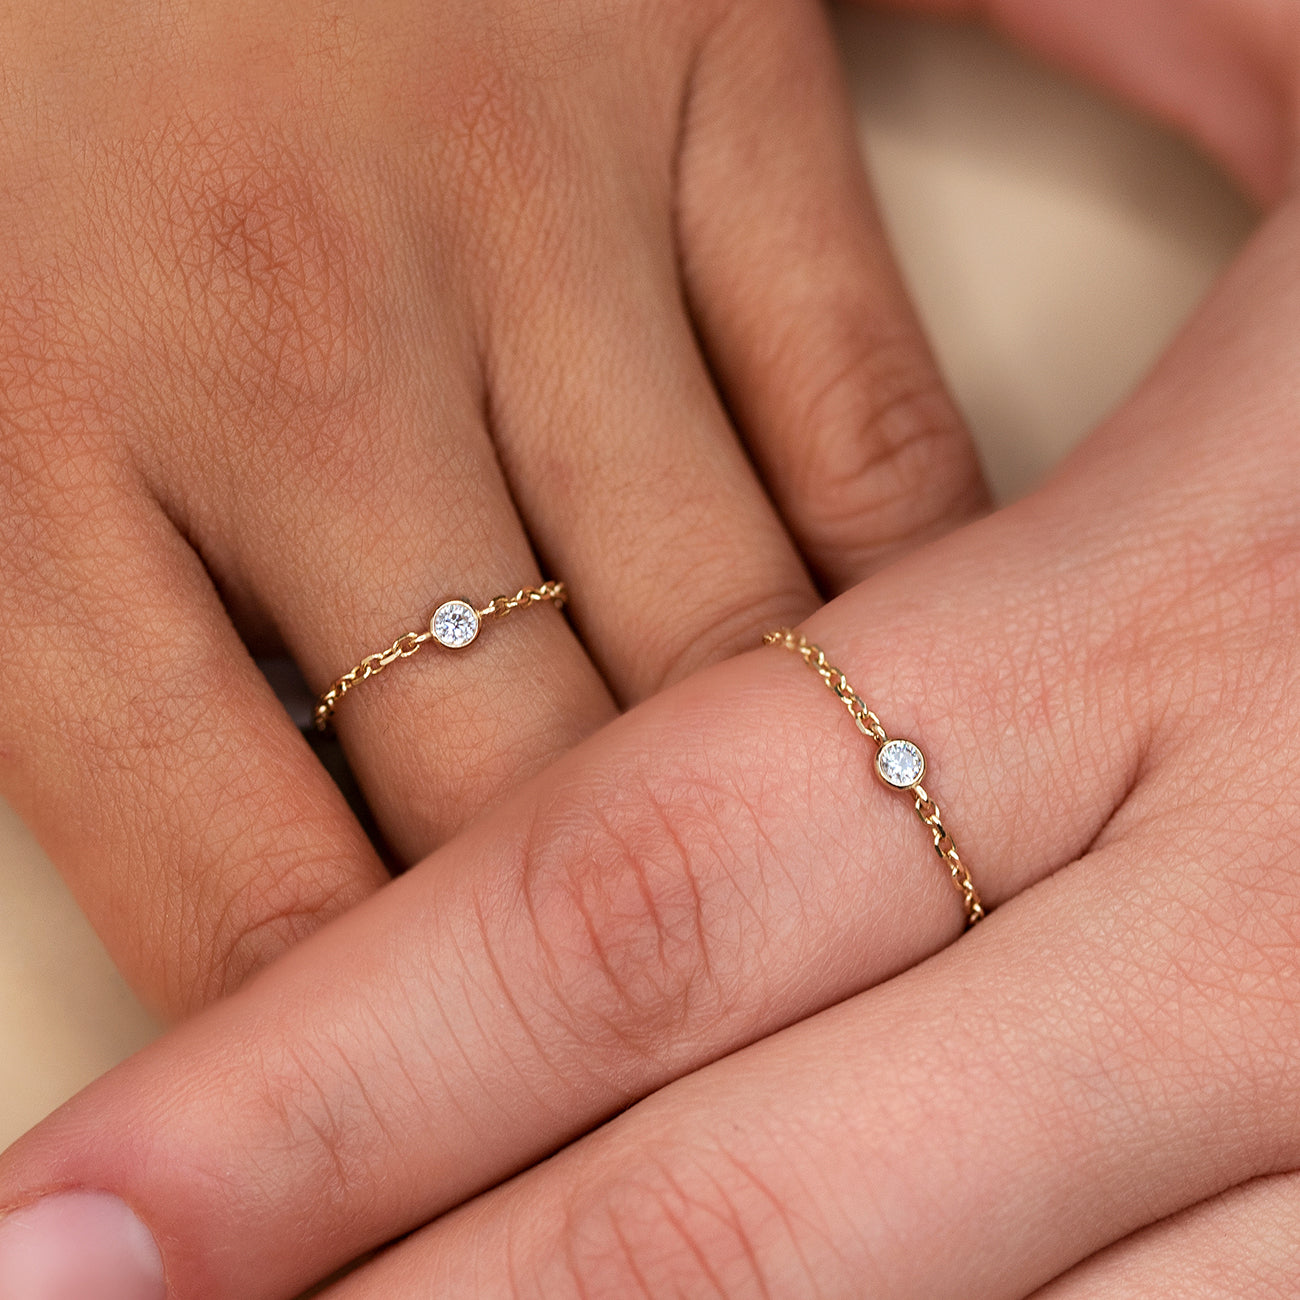 Cheap engagement rings from gold | JewelryAndGems.eu